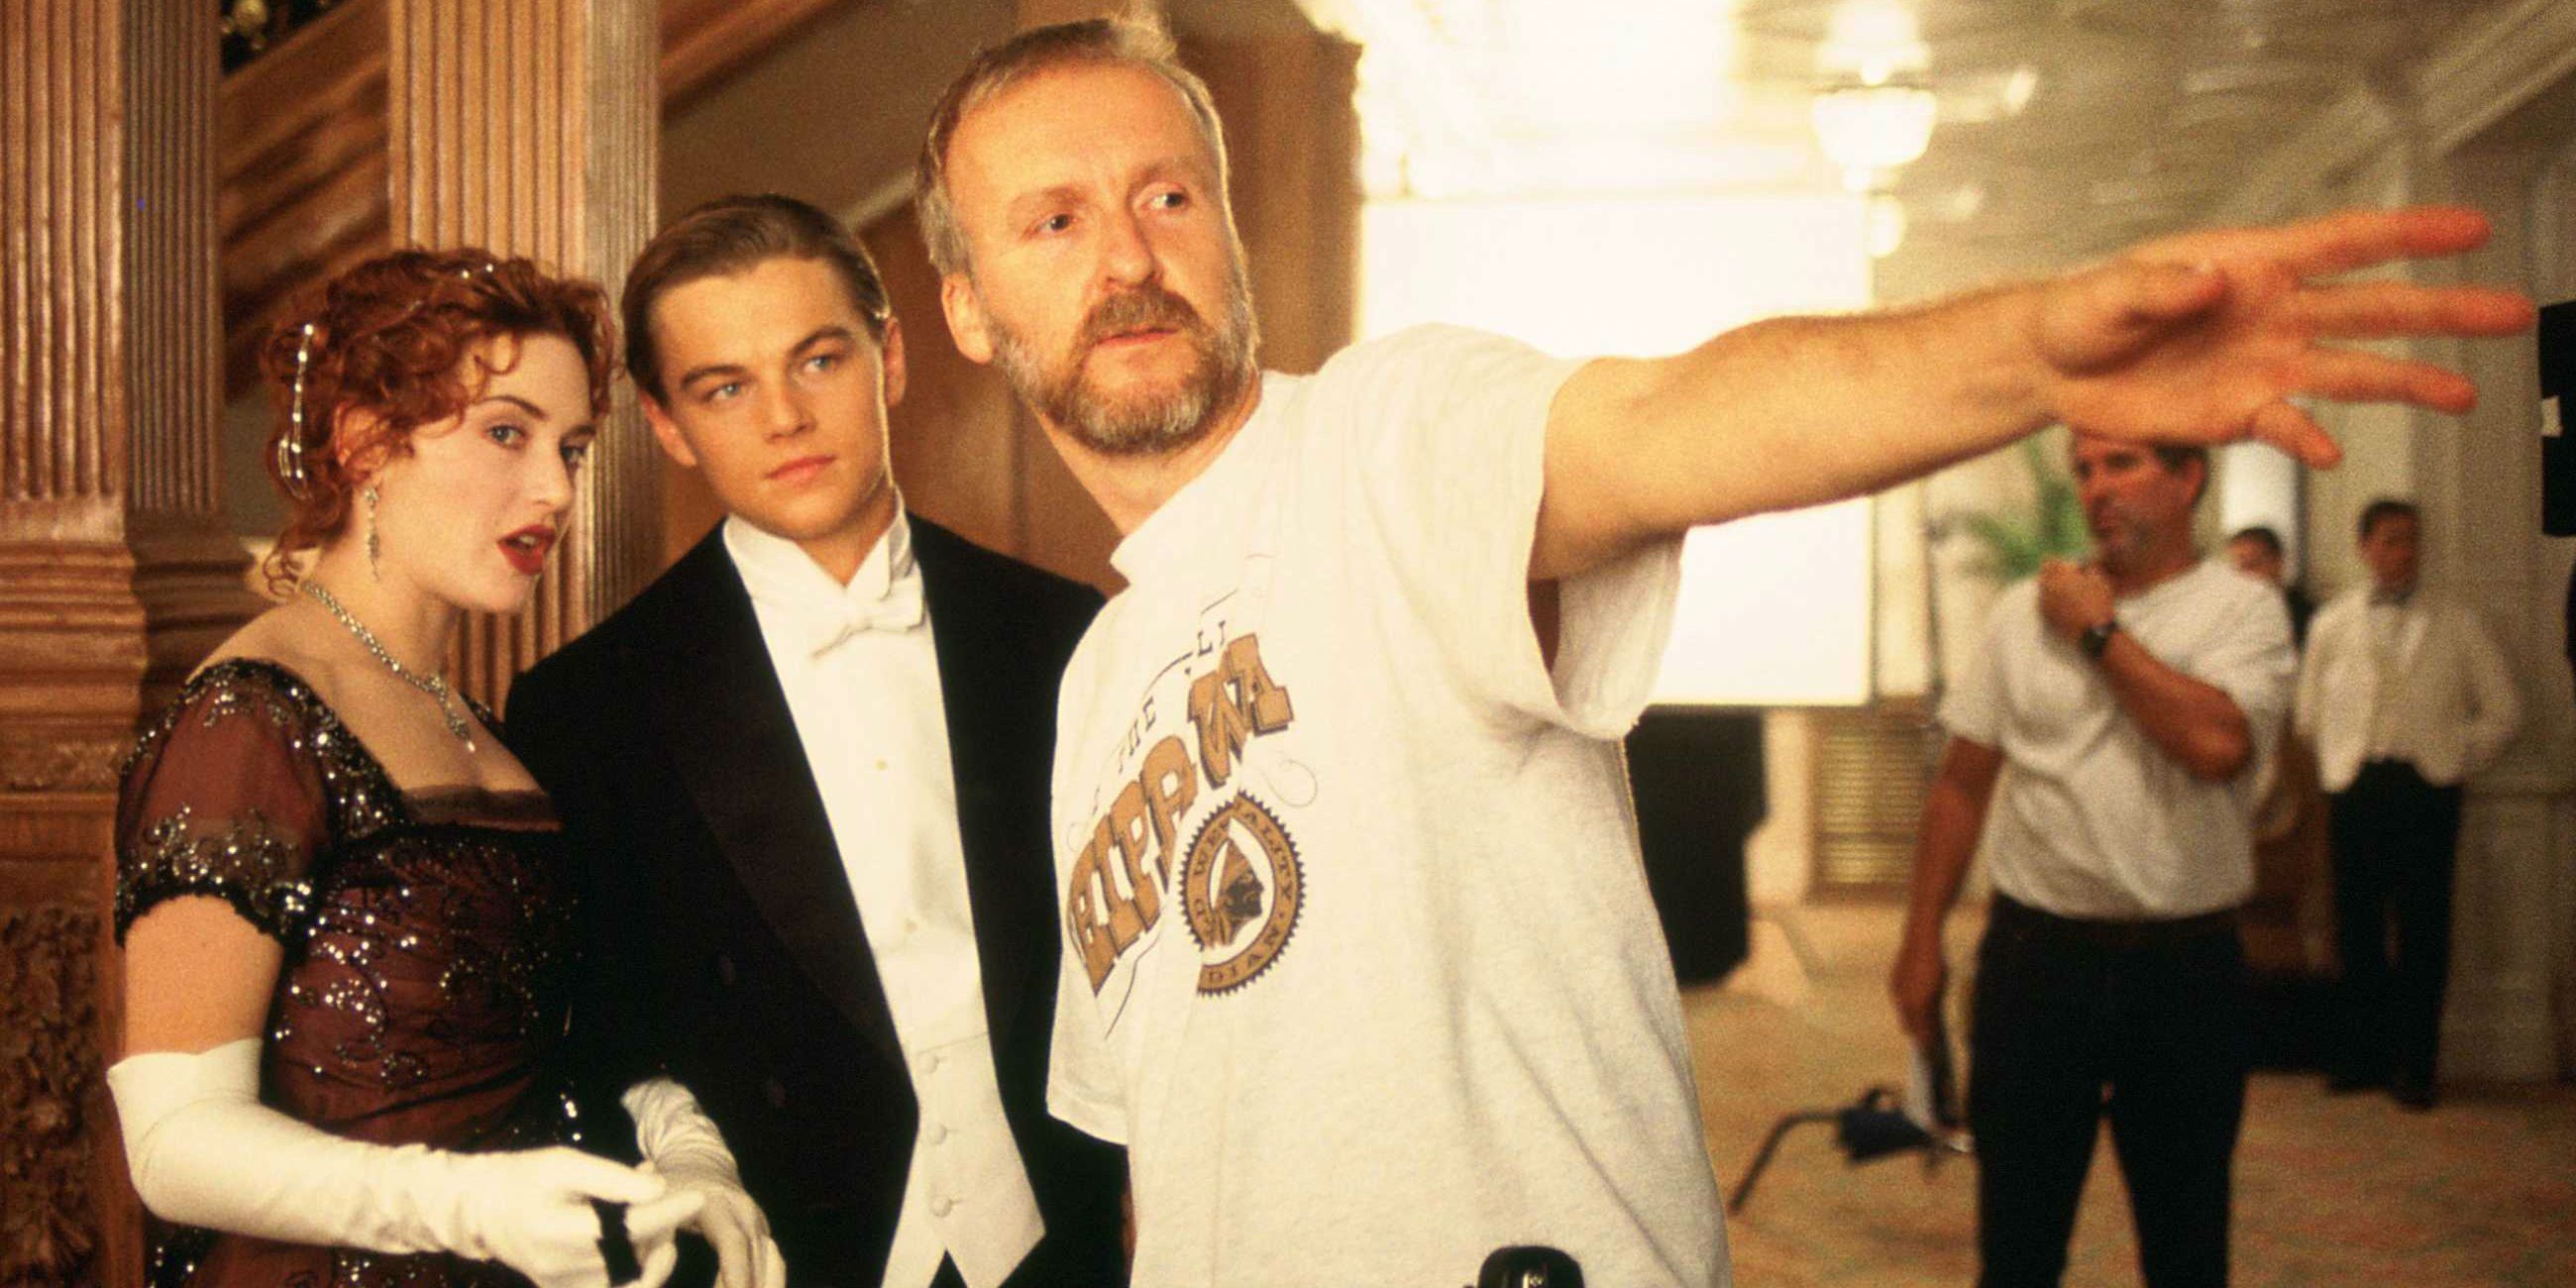 James Cameron directing Titanic